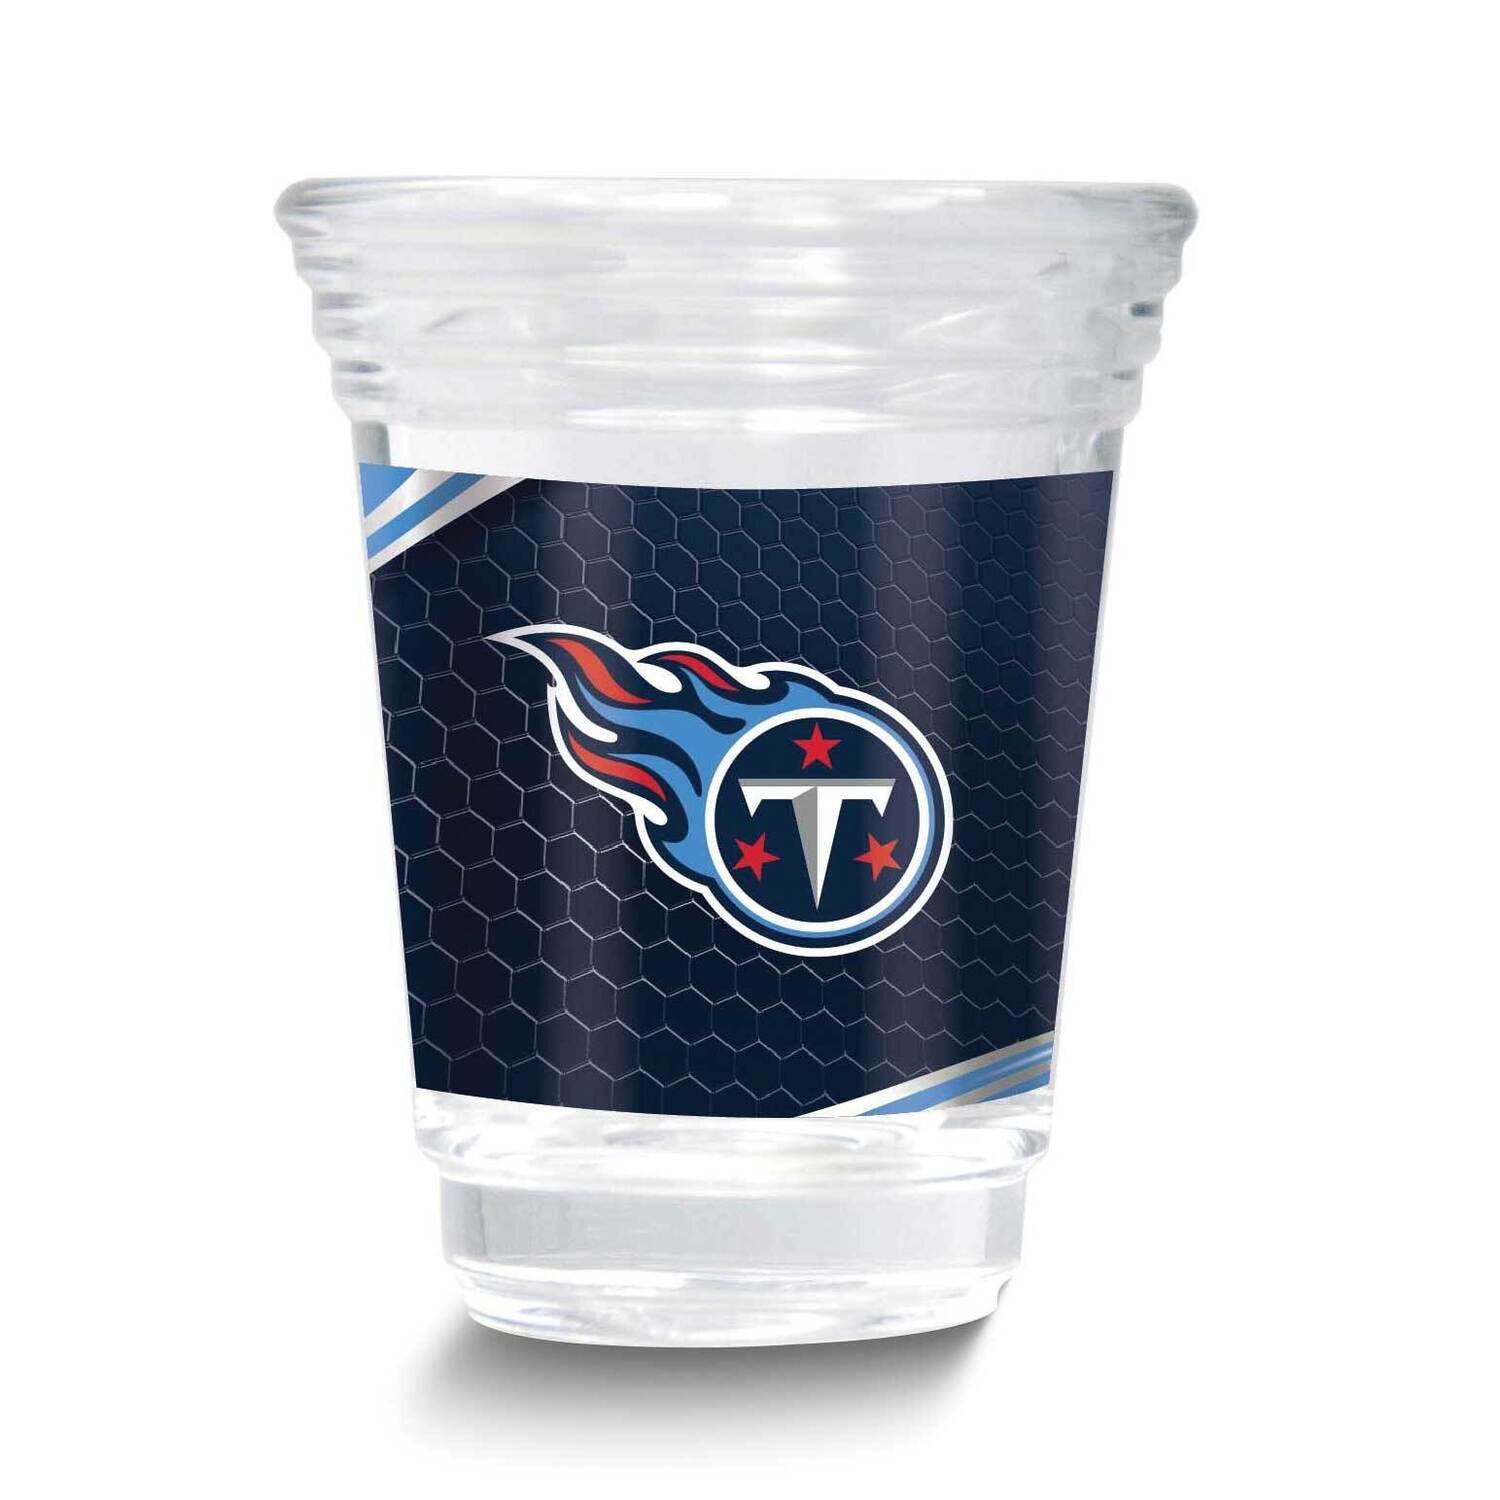 NFL TennesseeTitans 2oz Square Shot Glass GM26123-TIT